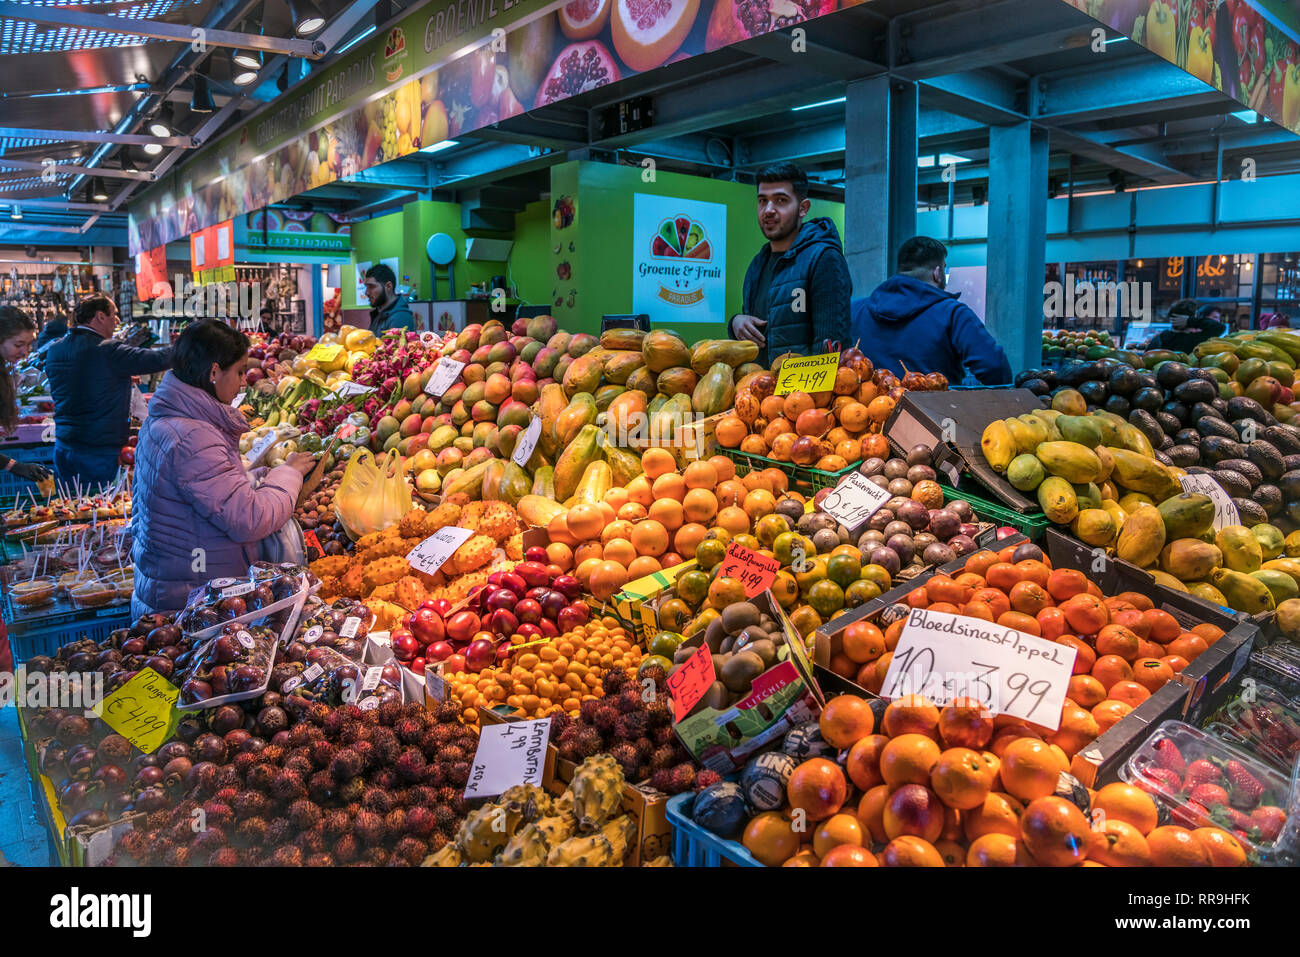 Stand mit exotischem Obst und Früchten in der Markthalle / Markthal , Rotterdam, Südholland, Niederlande | Mercato stallo con frutti esotici, Marktha Foto Stock